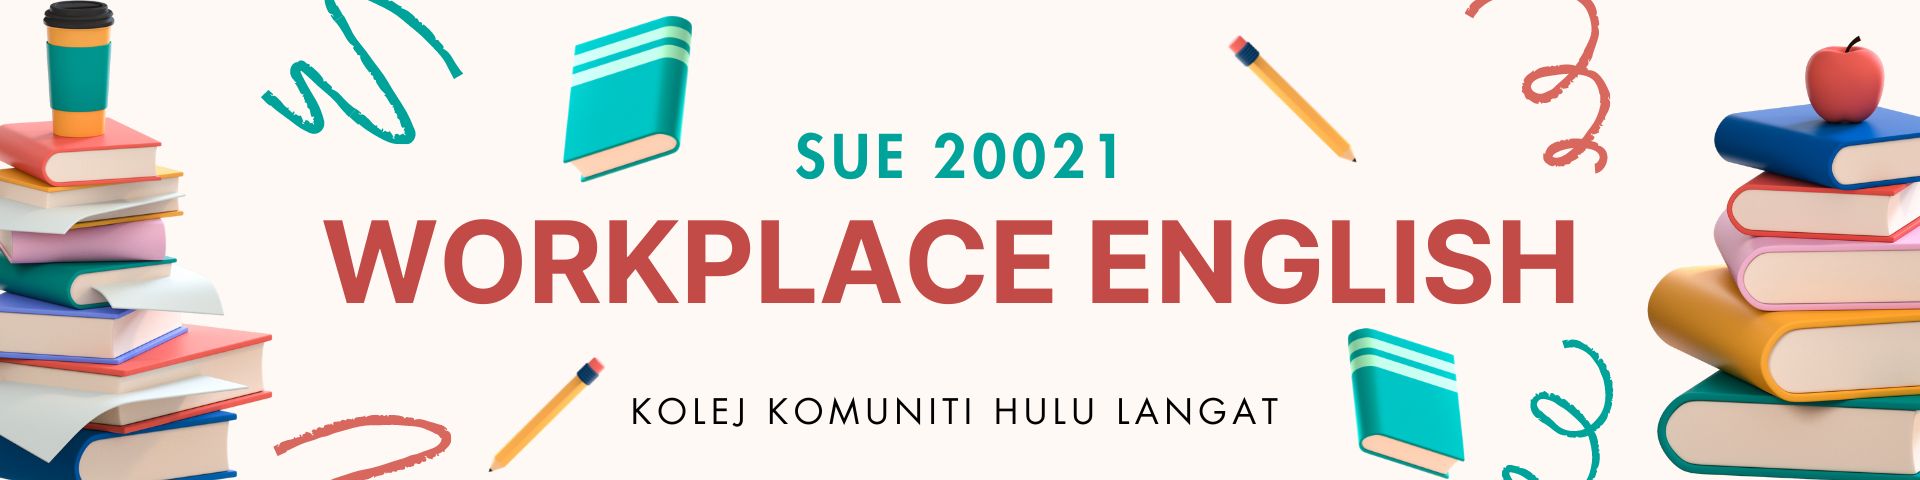 KKHL | SUE 20021 Workplace English